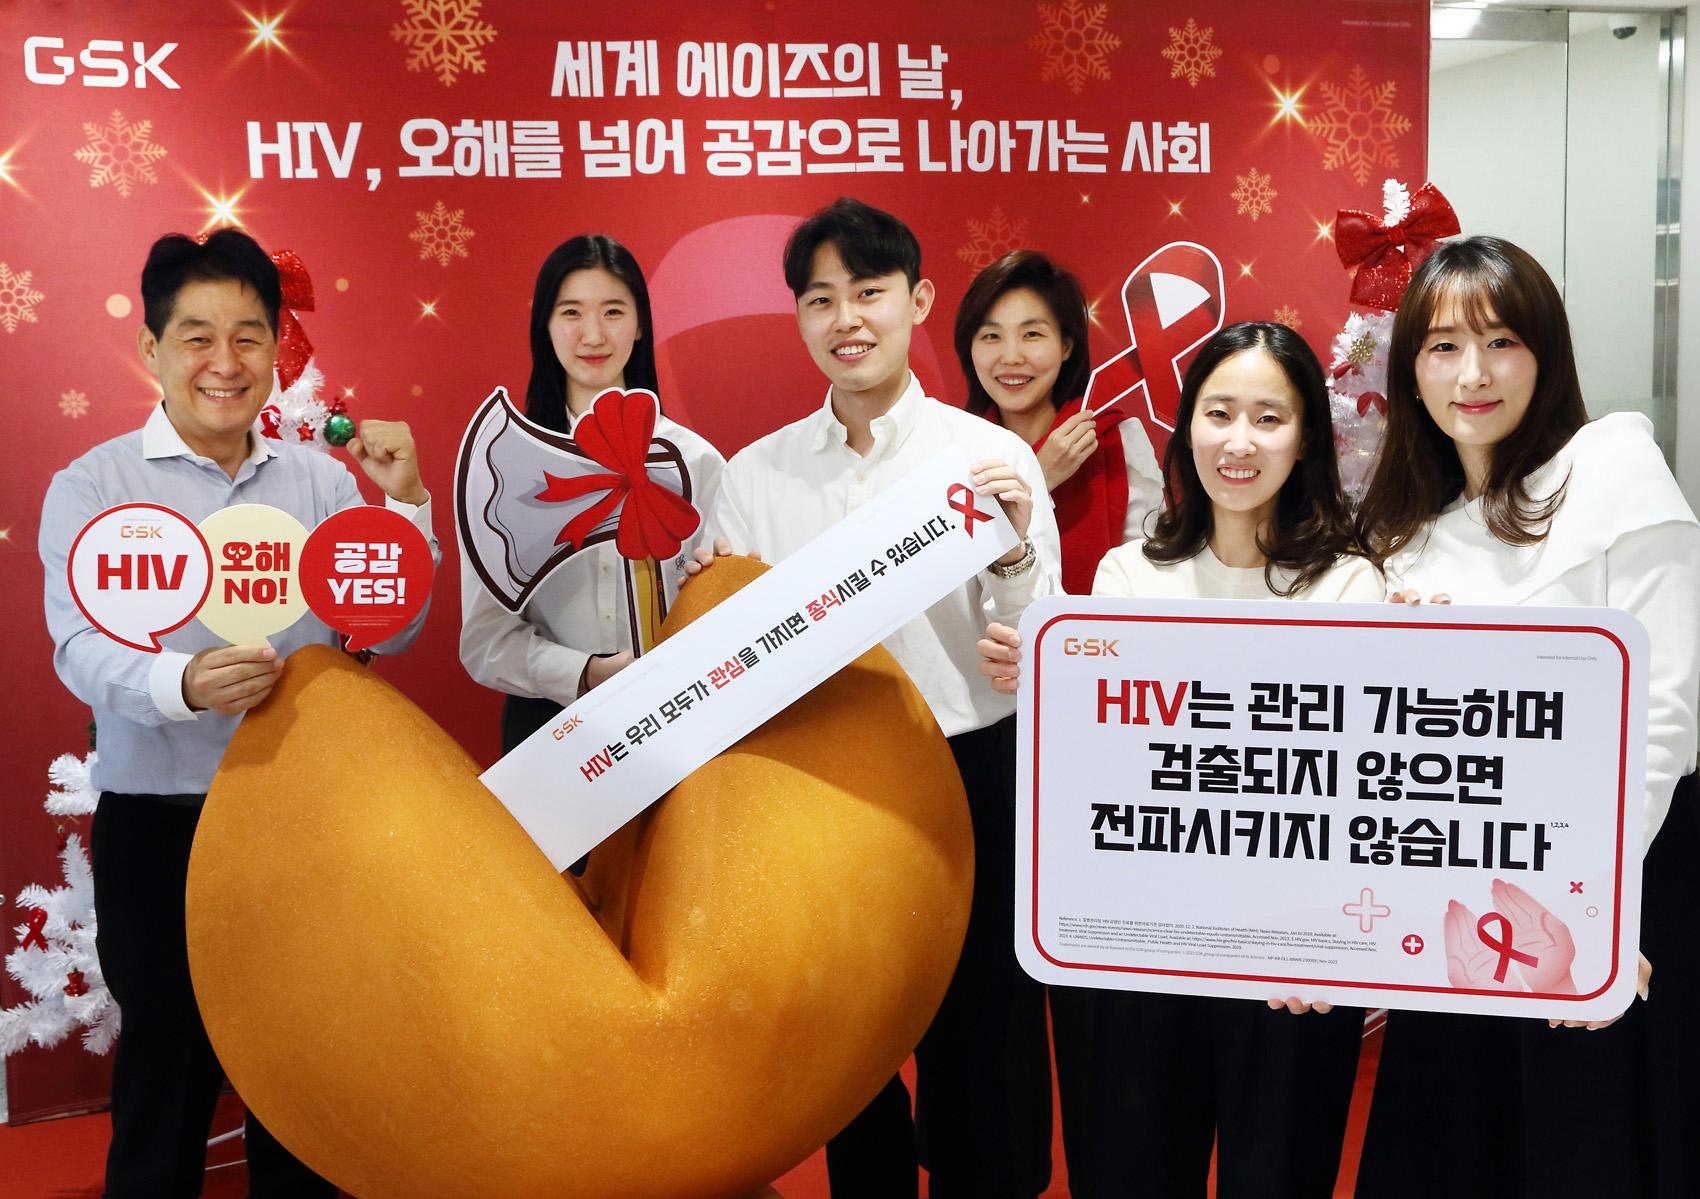 한국GSK, '세계 에이즈의 날' 맞아 HIV 질환 인식 개선 캠페인 진행